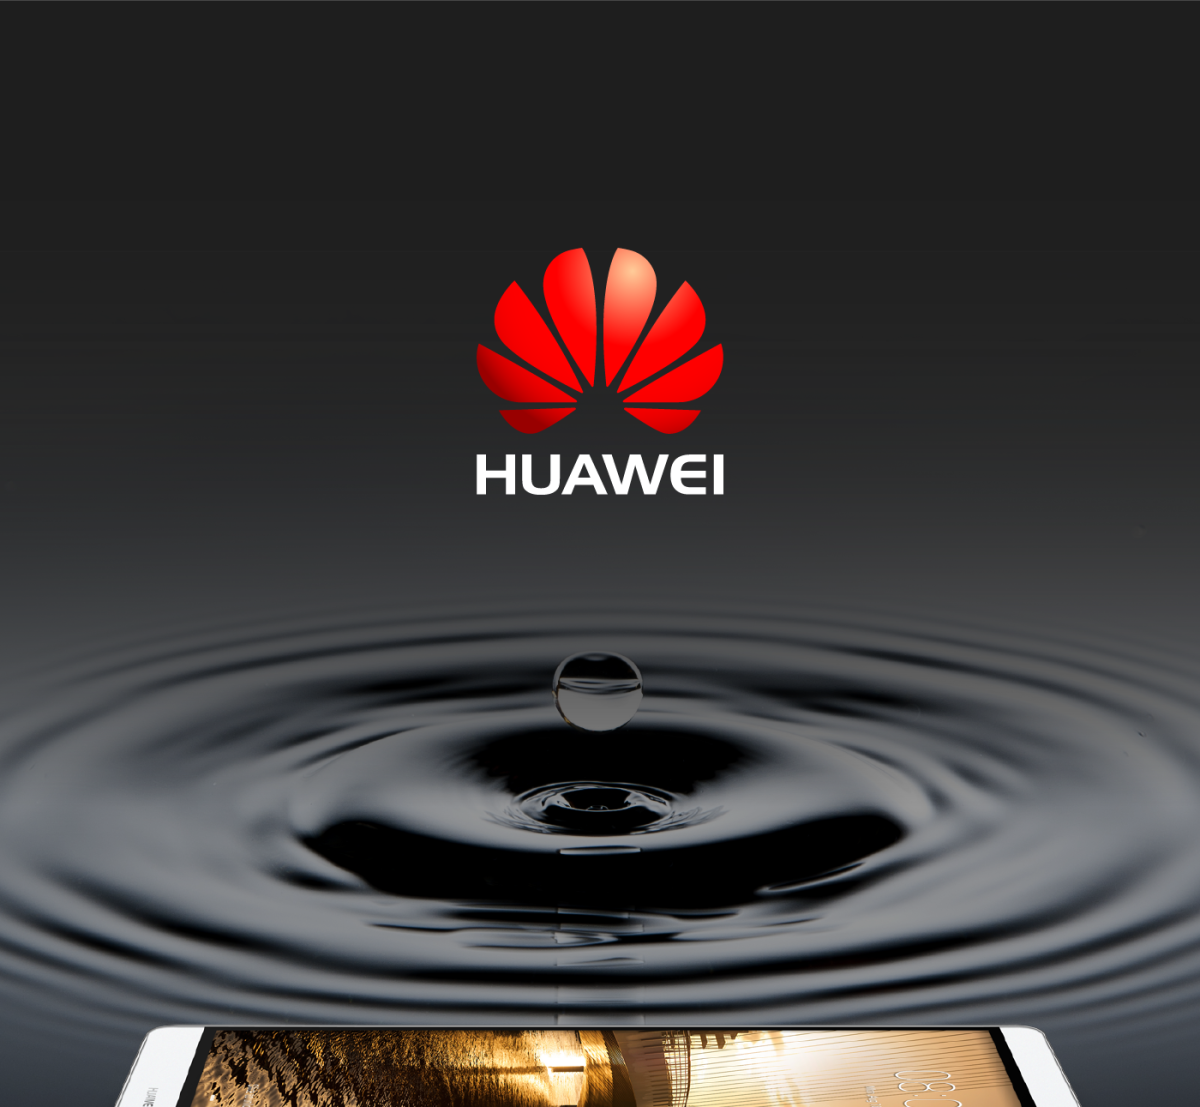 Всплывает реклама хуавей. Реклама Хуавей. Реклама компании Huawei. Хуавей логотип. Баннеры Huawei.